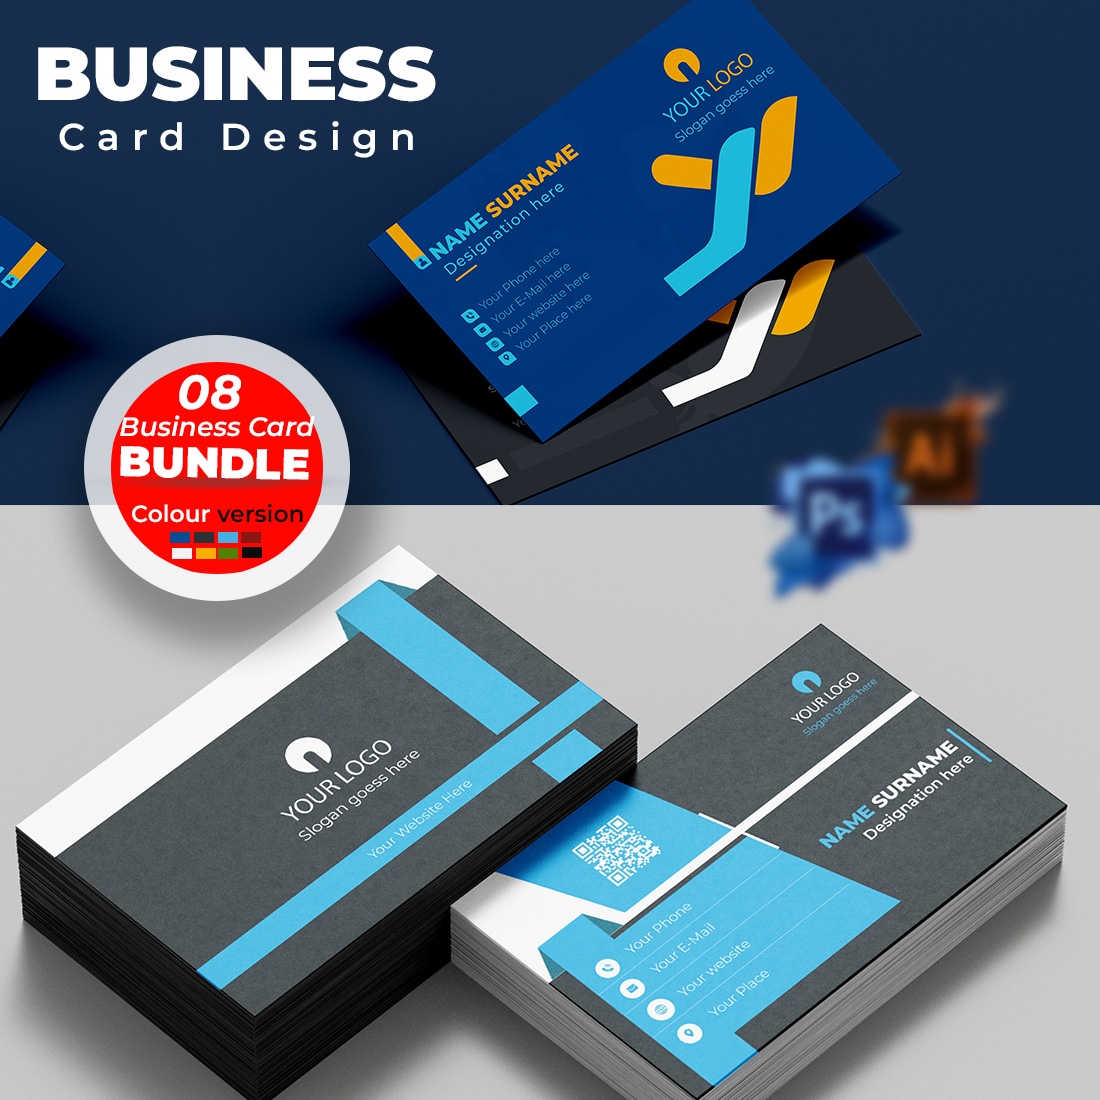 Modern Business Card Design Bundle cover image.